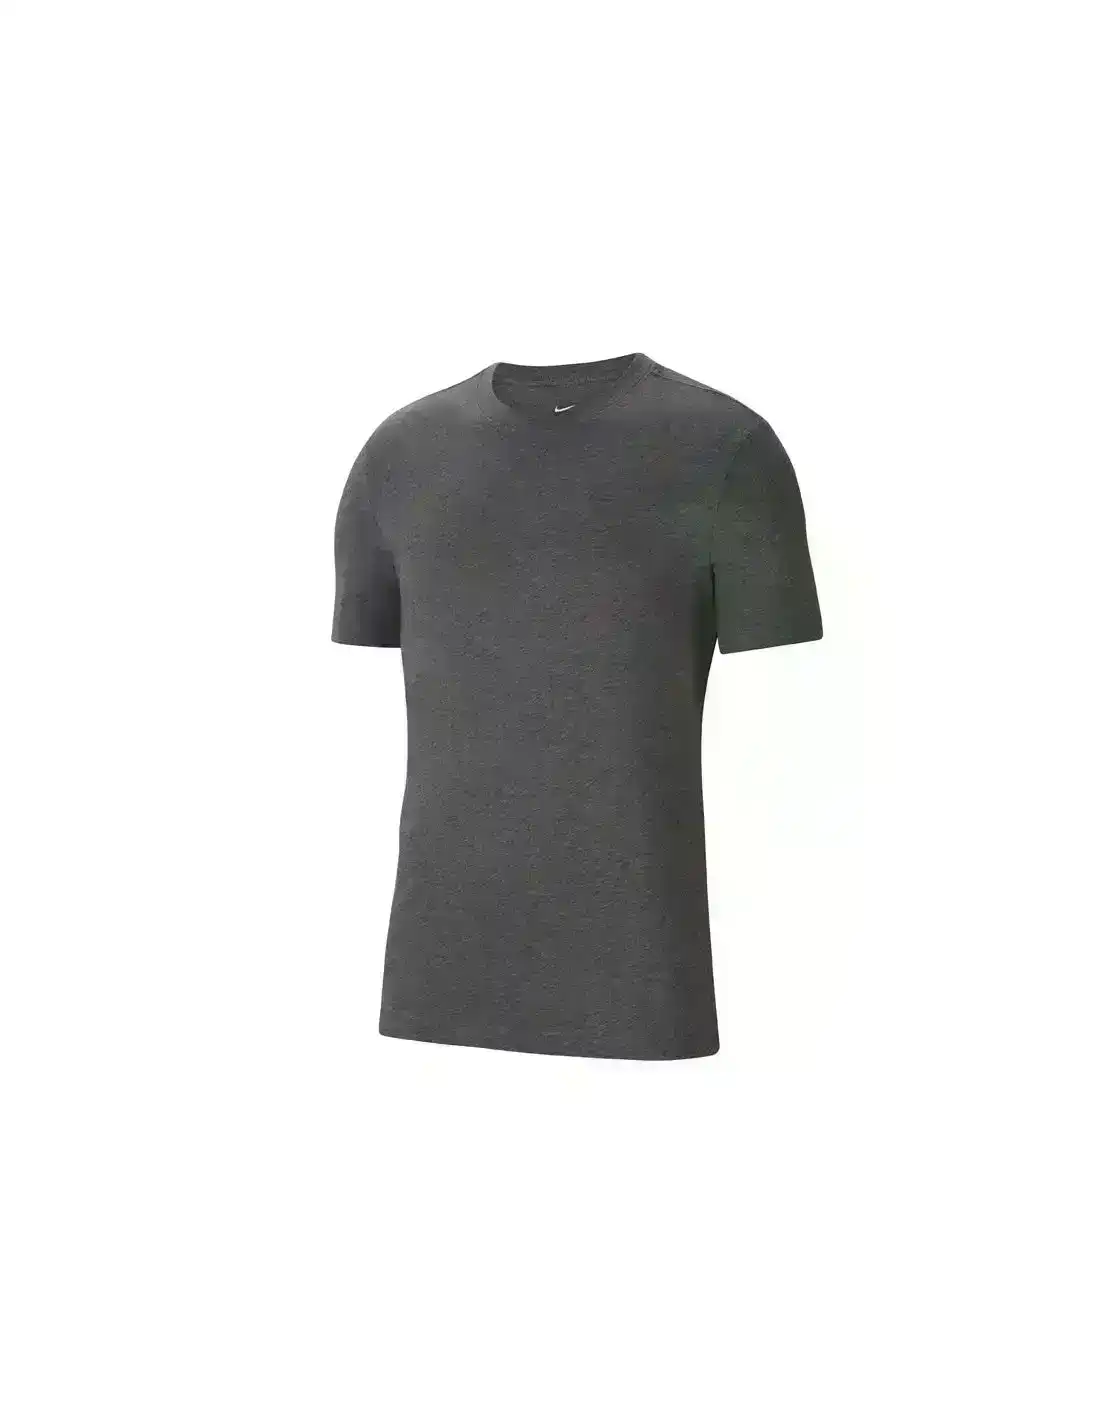 5 x Nike Park 20 T-Shirt Training Athletic Sportswear Grey